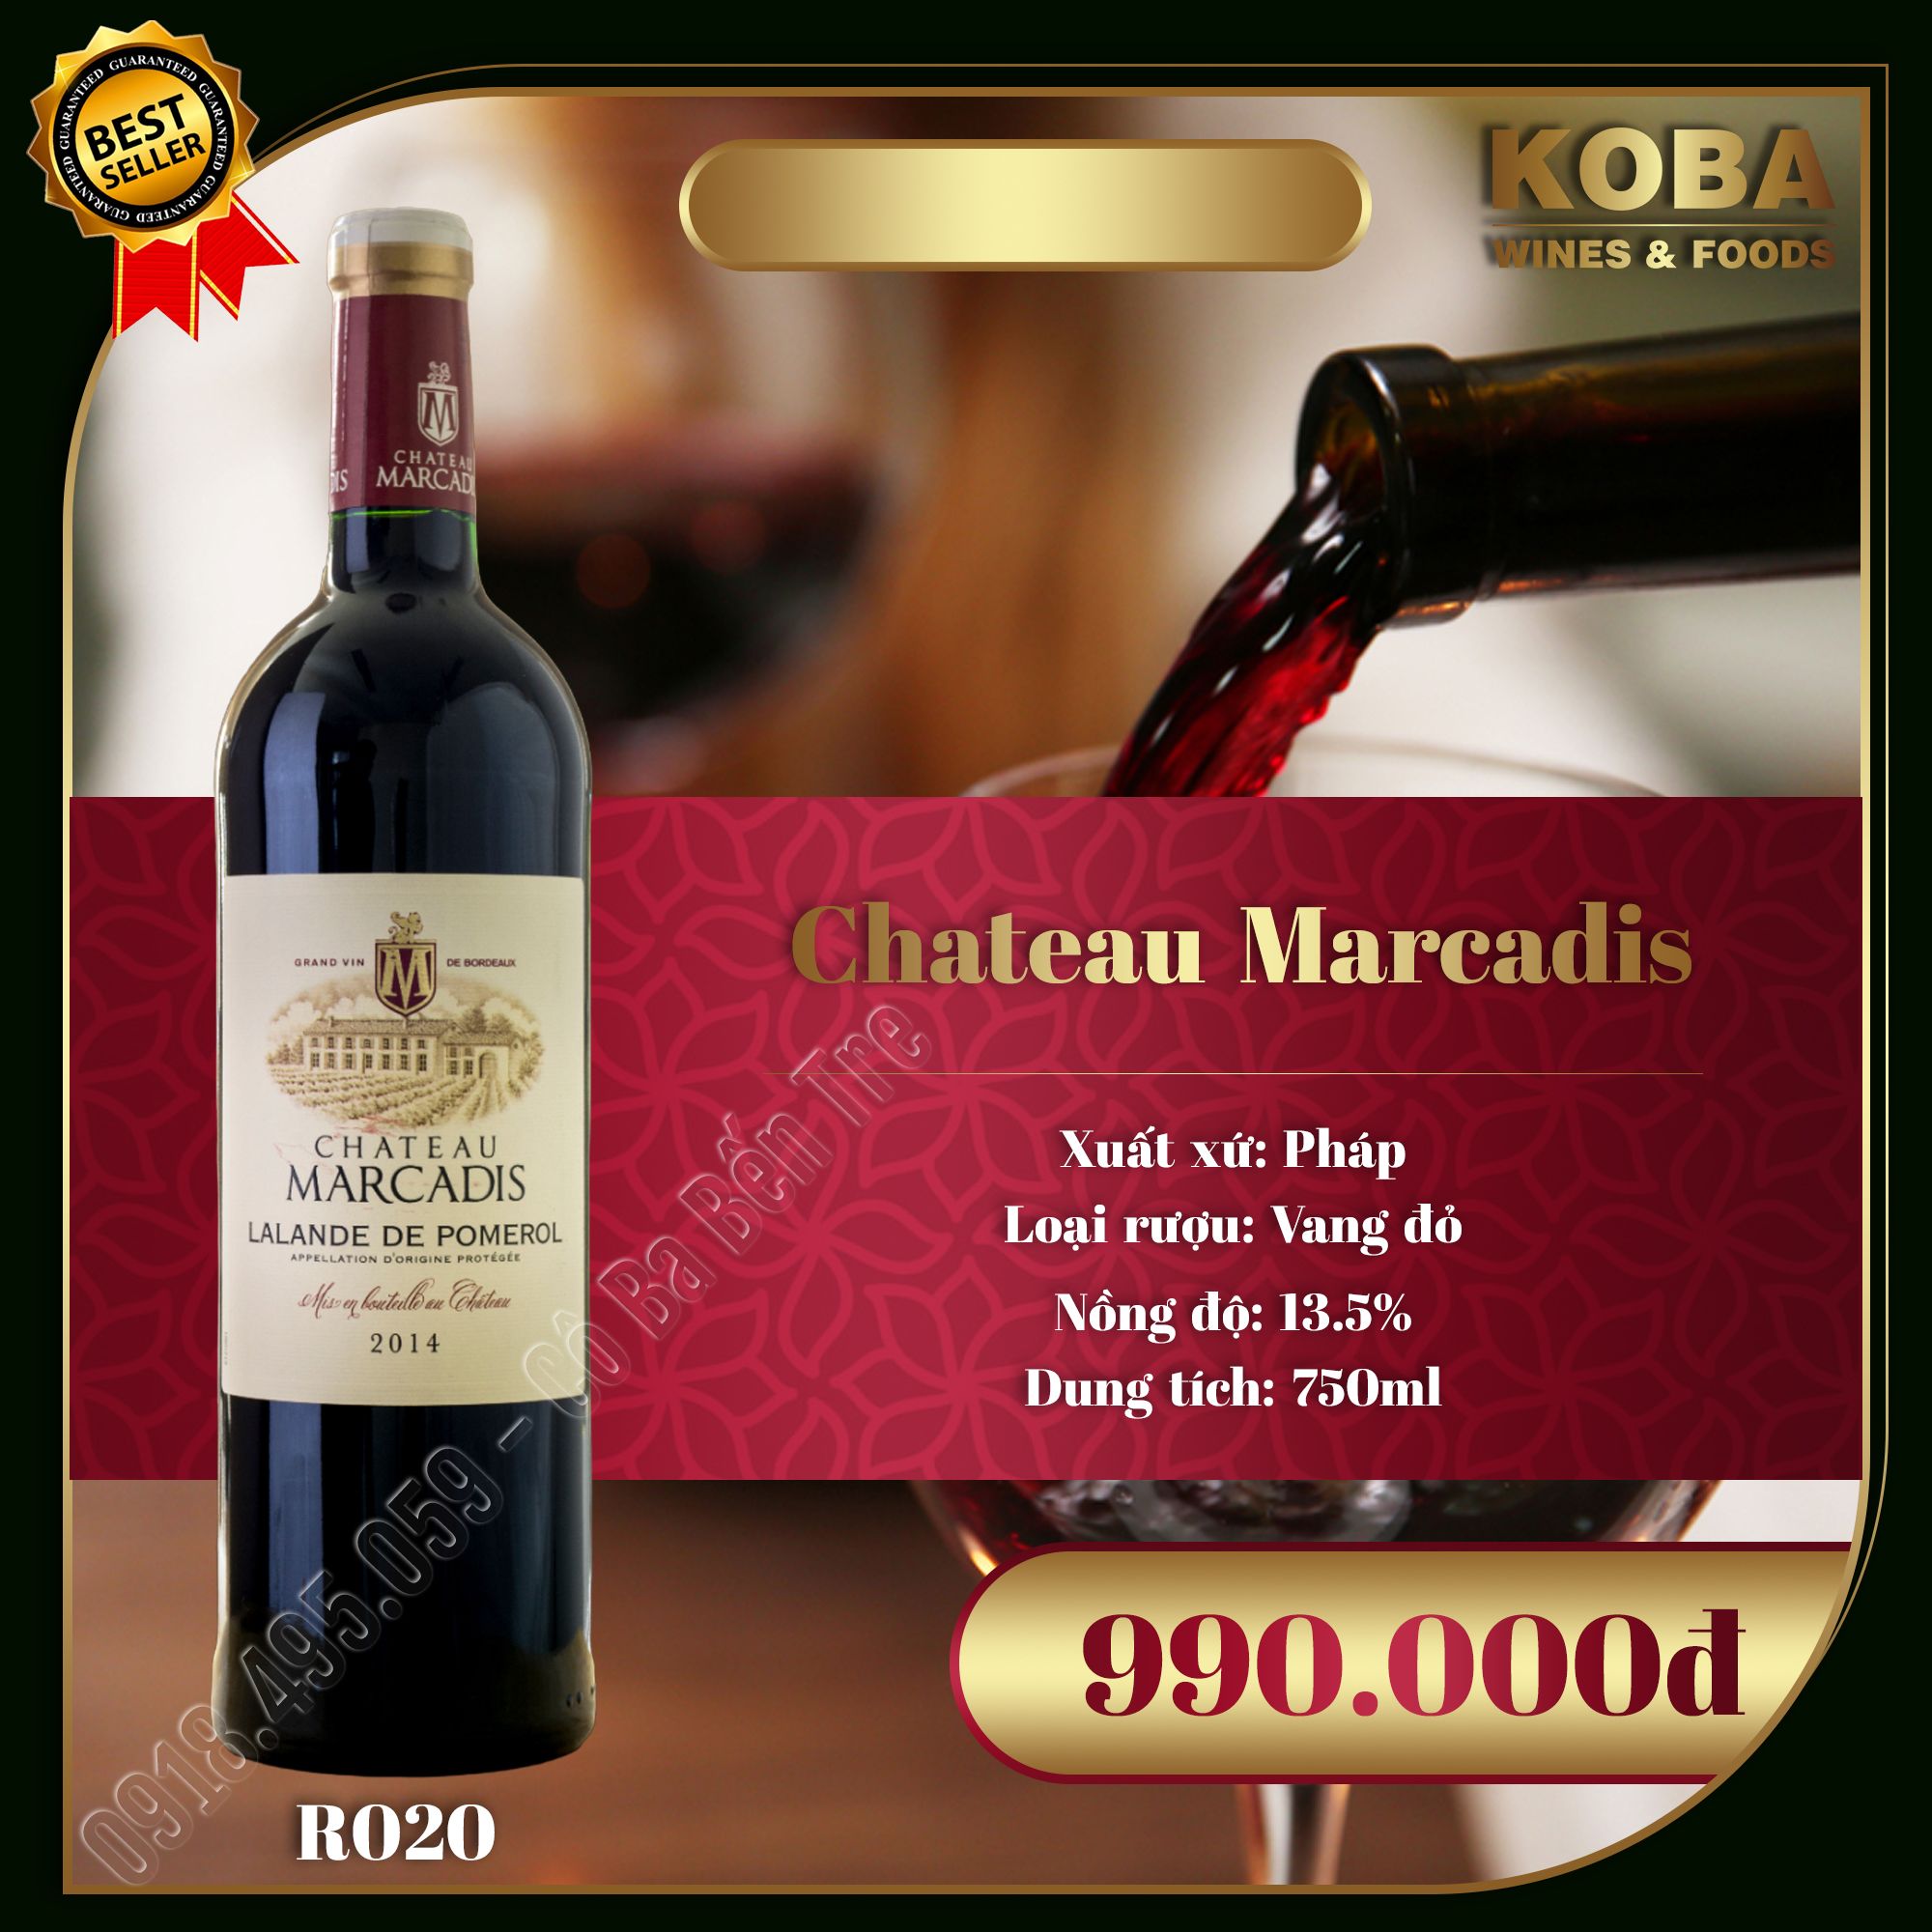 Rượu Vang Đỏ Pháp - Chateau Marcadis - 13.5 độ